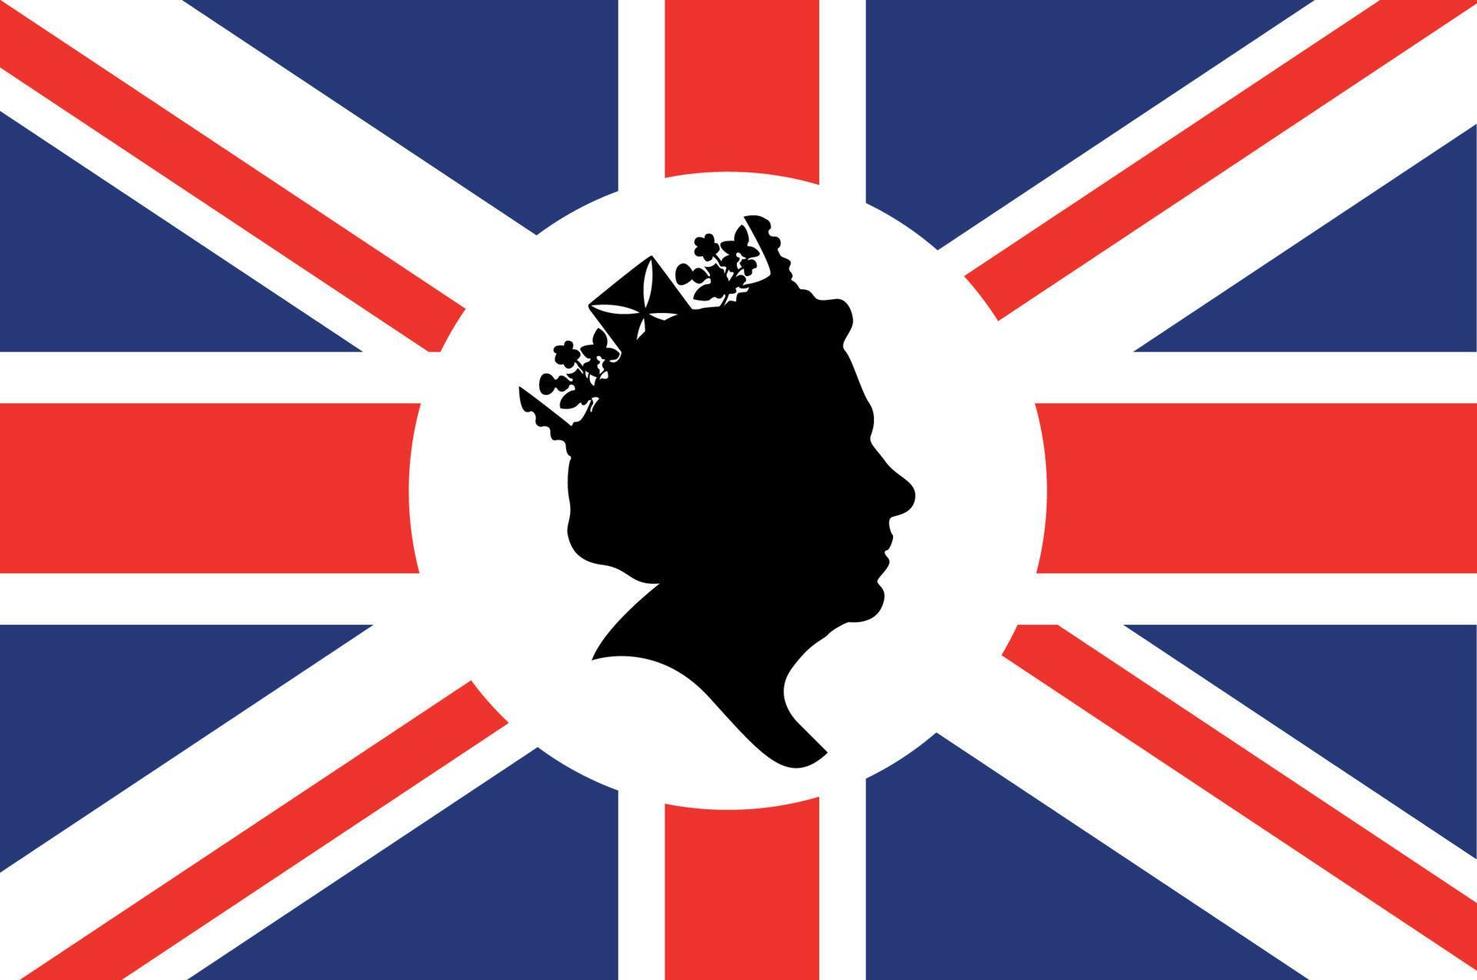 reina elizabeth cara en blanco y negro con bandera británica del reino unido emblema nacional de europa icono ilustración vectorial elemento de diseño abstracto vector